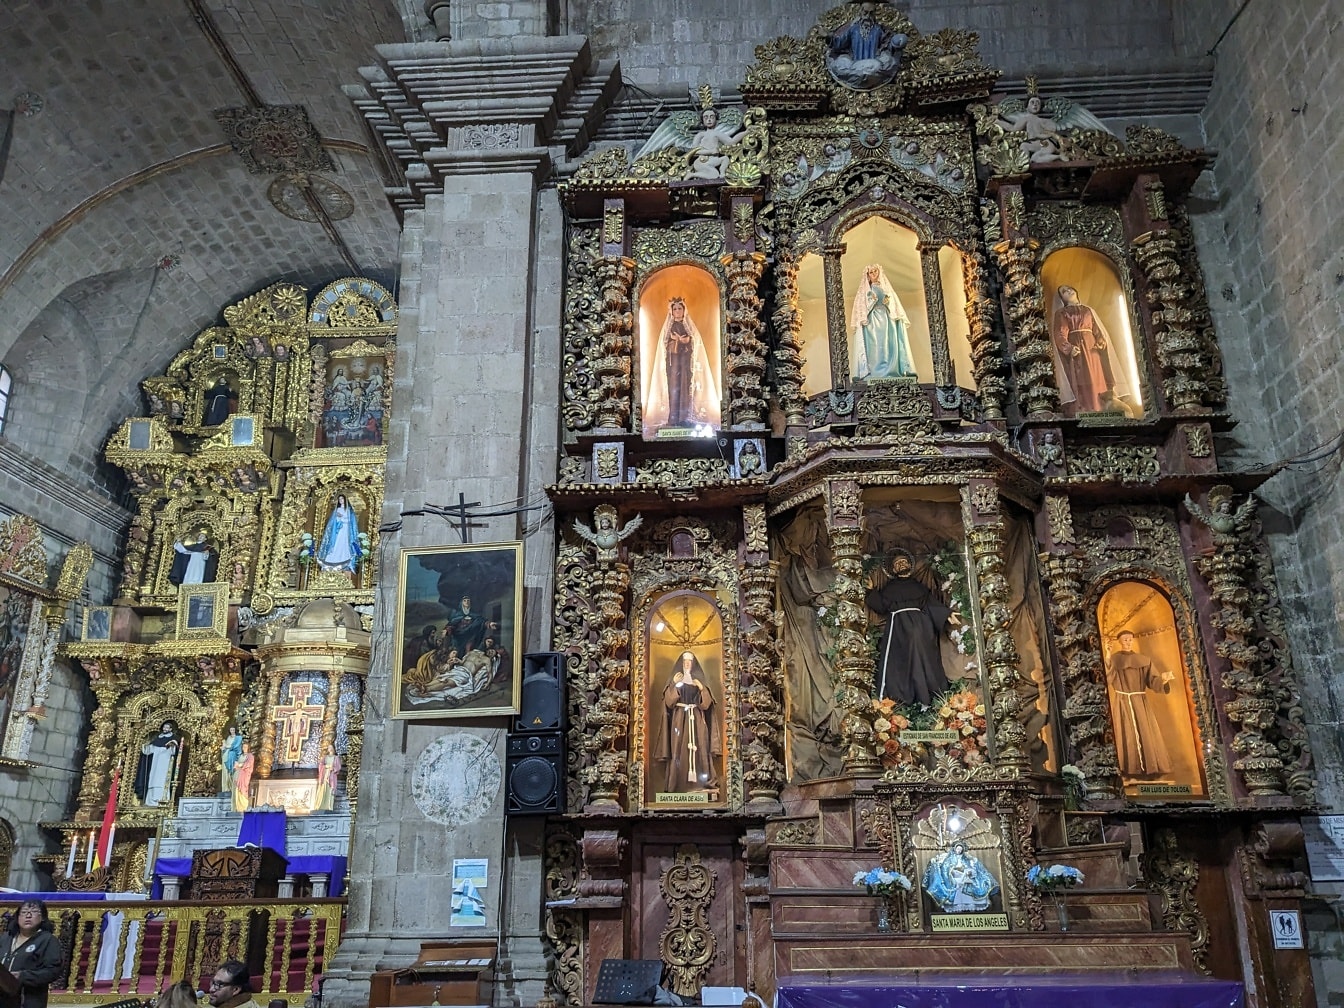 Nội thất của nhà thờ với bàn thờ được trang trí với các bức tượng của các vị thánh theo phong cách truyền thống của Mỹ Latinh